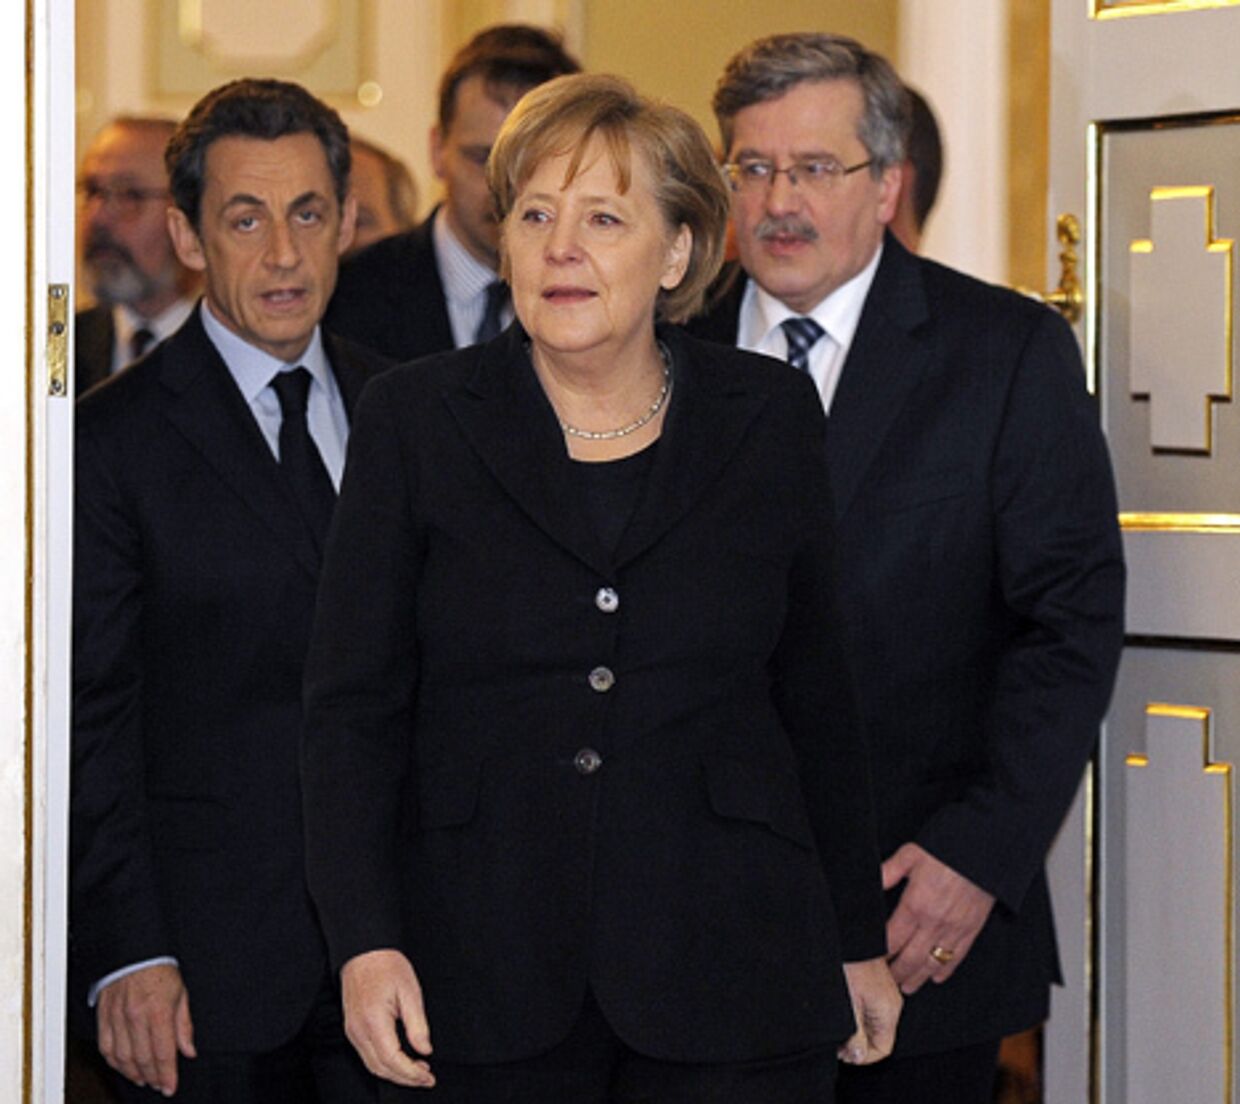 встреча Николя Саркози  в Варшаве с канцлером Германии Ангелой Меркель и президентом Польши Брониславом Коморовским